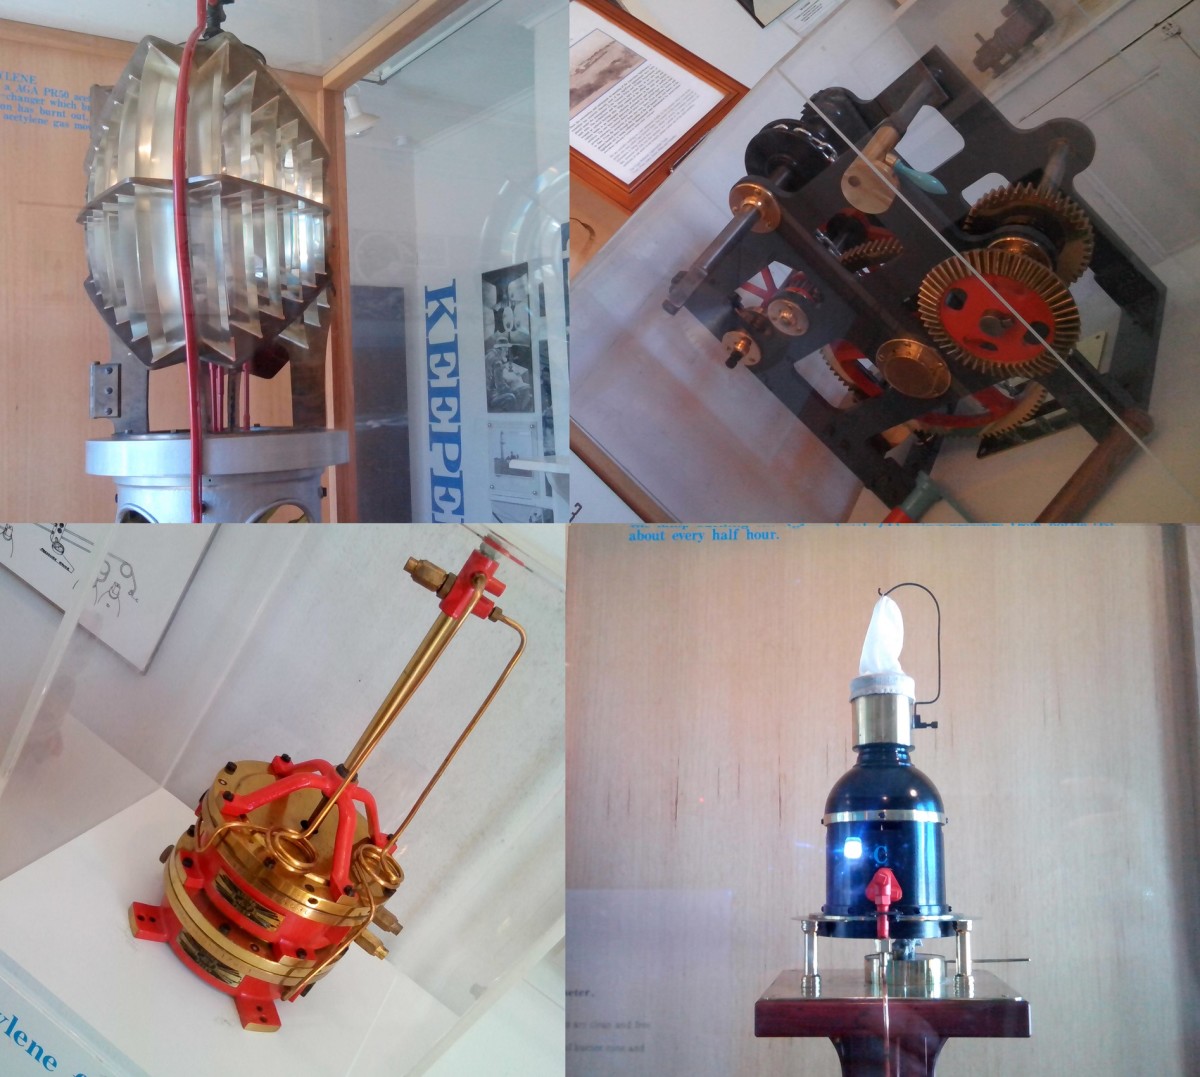 Top left - early lantern reflectors; top right - early clock mechanism; bottom left - acetylene flasher; bottom right - kerosene burner and vaporiser.